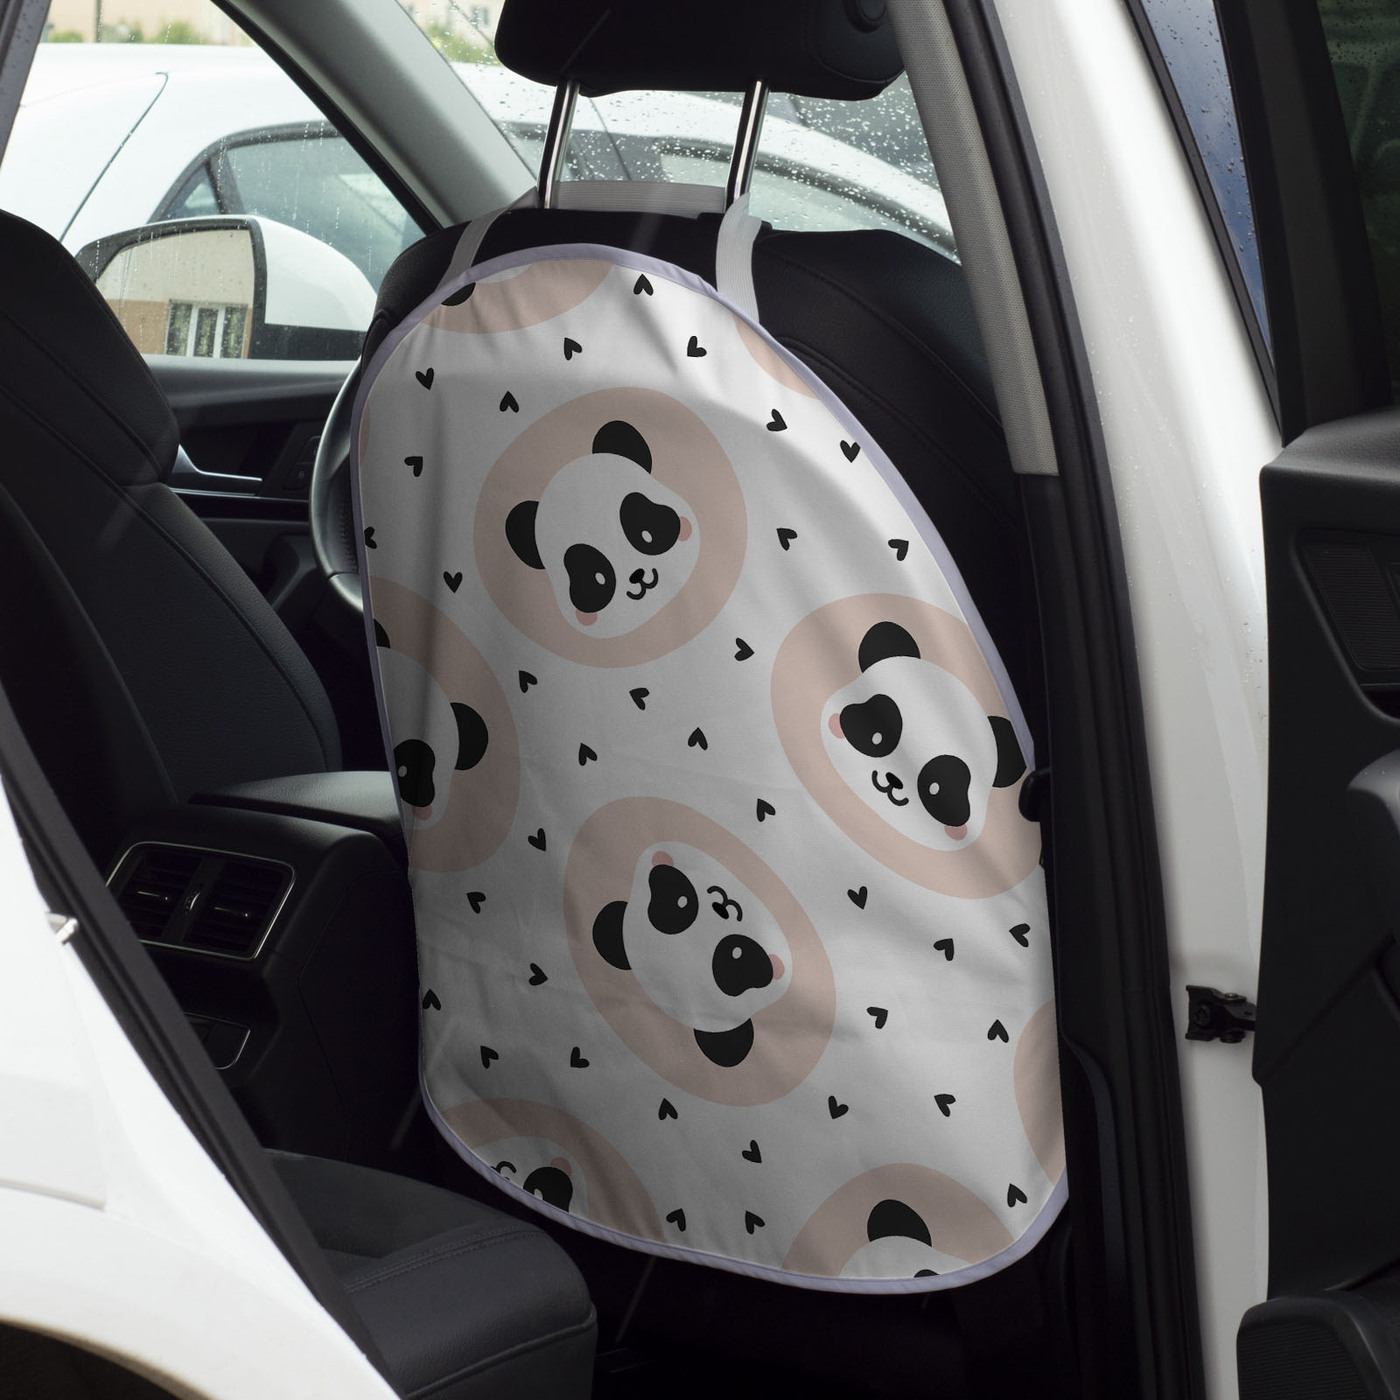 Защитная накидка на спинку сиденья автомобиля, универсальная, 57х62 см, Gorolla